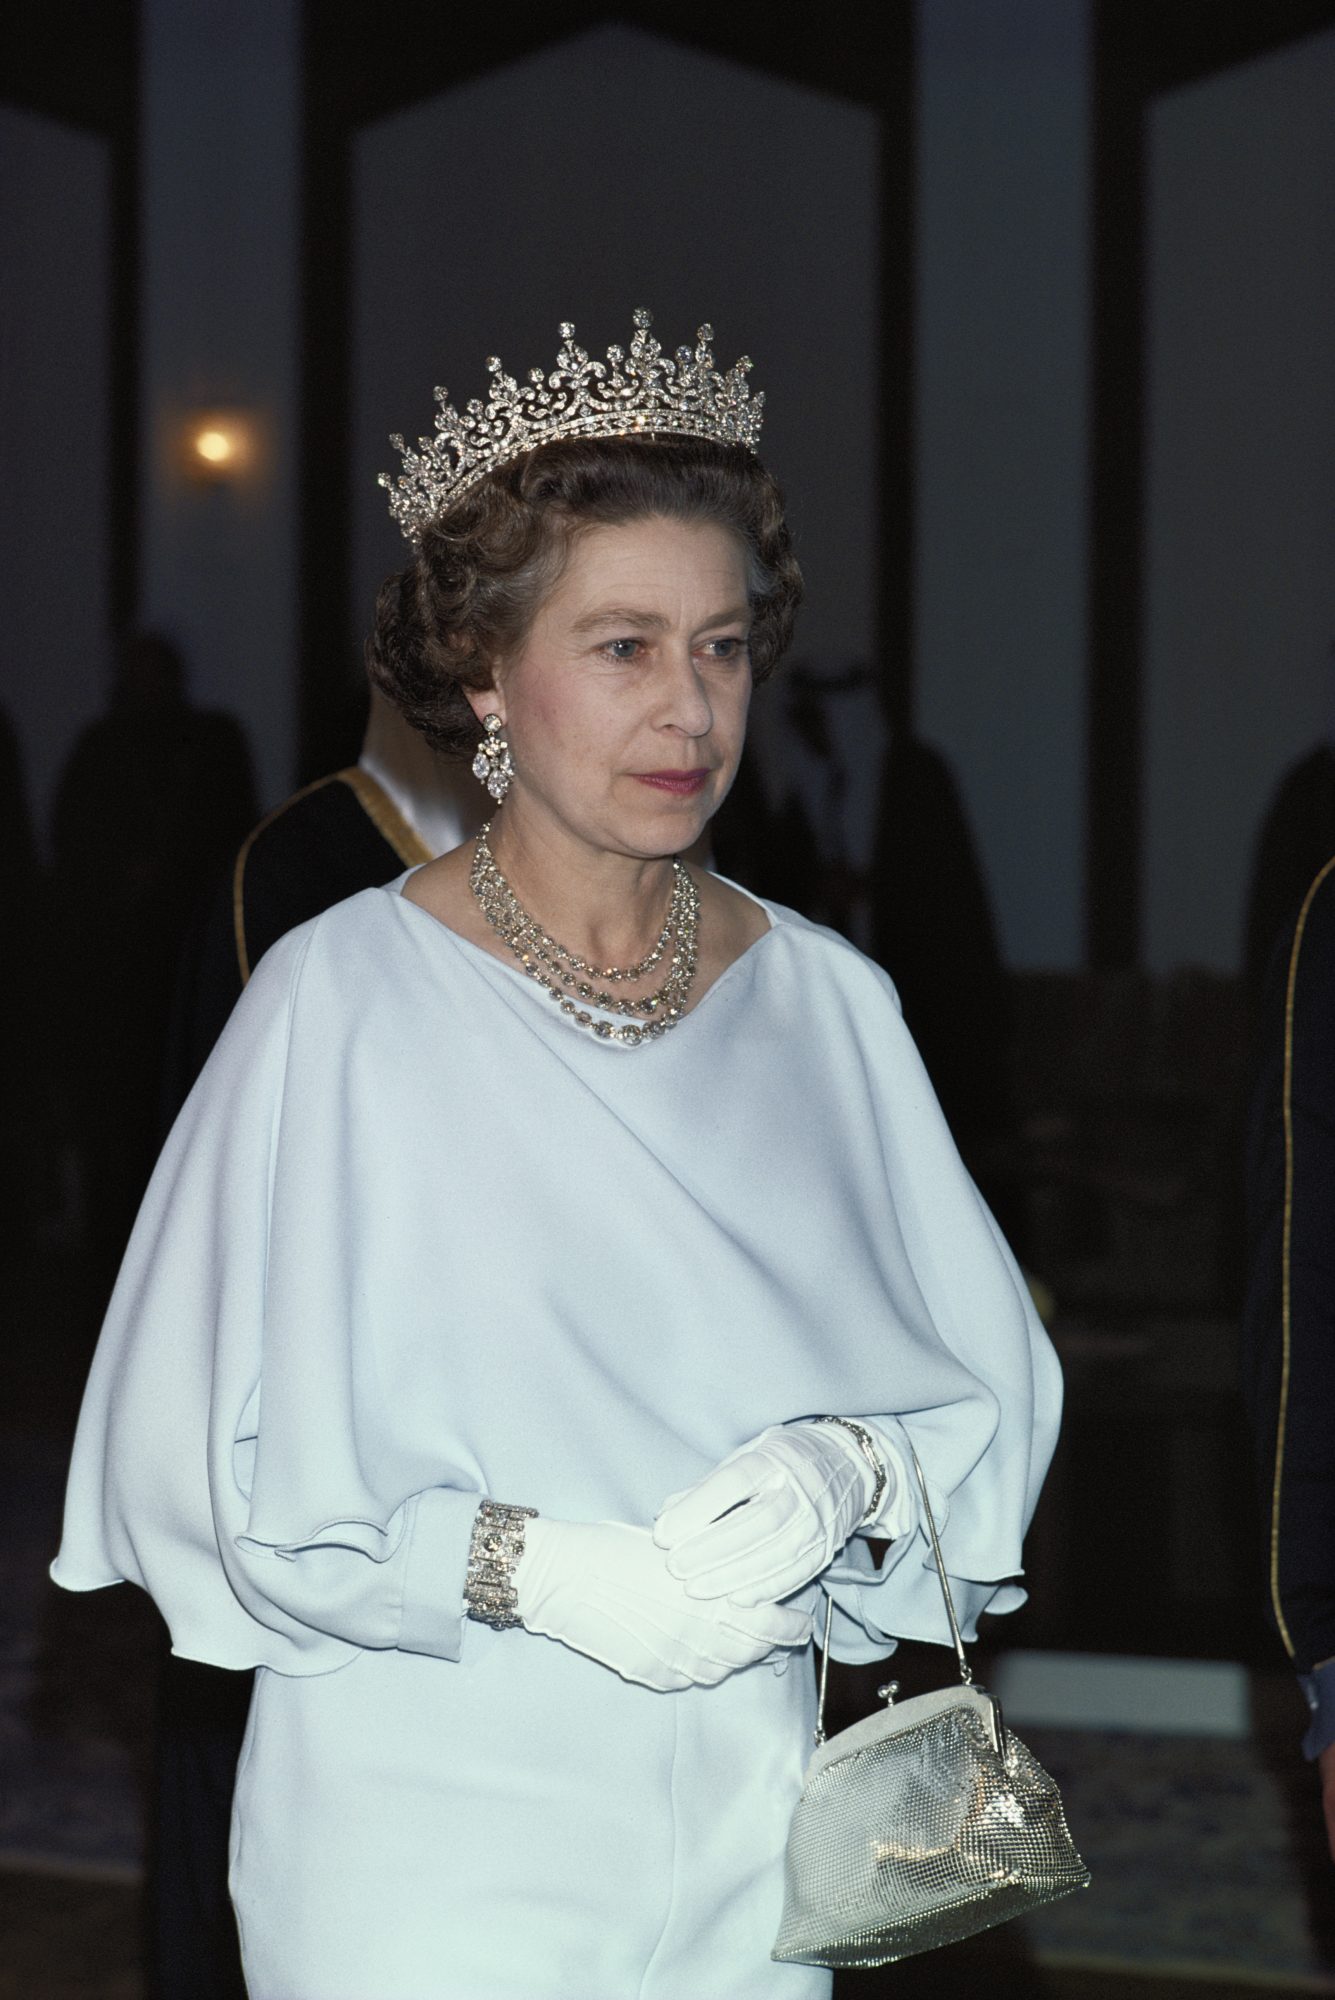 11 điều bạn có lẽ chưa biết về những chiếc vương miện tiara của hoàng gia - 9